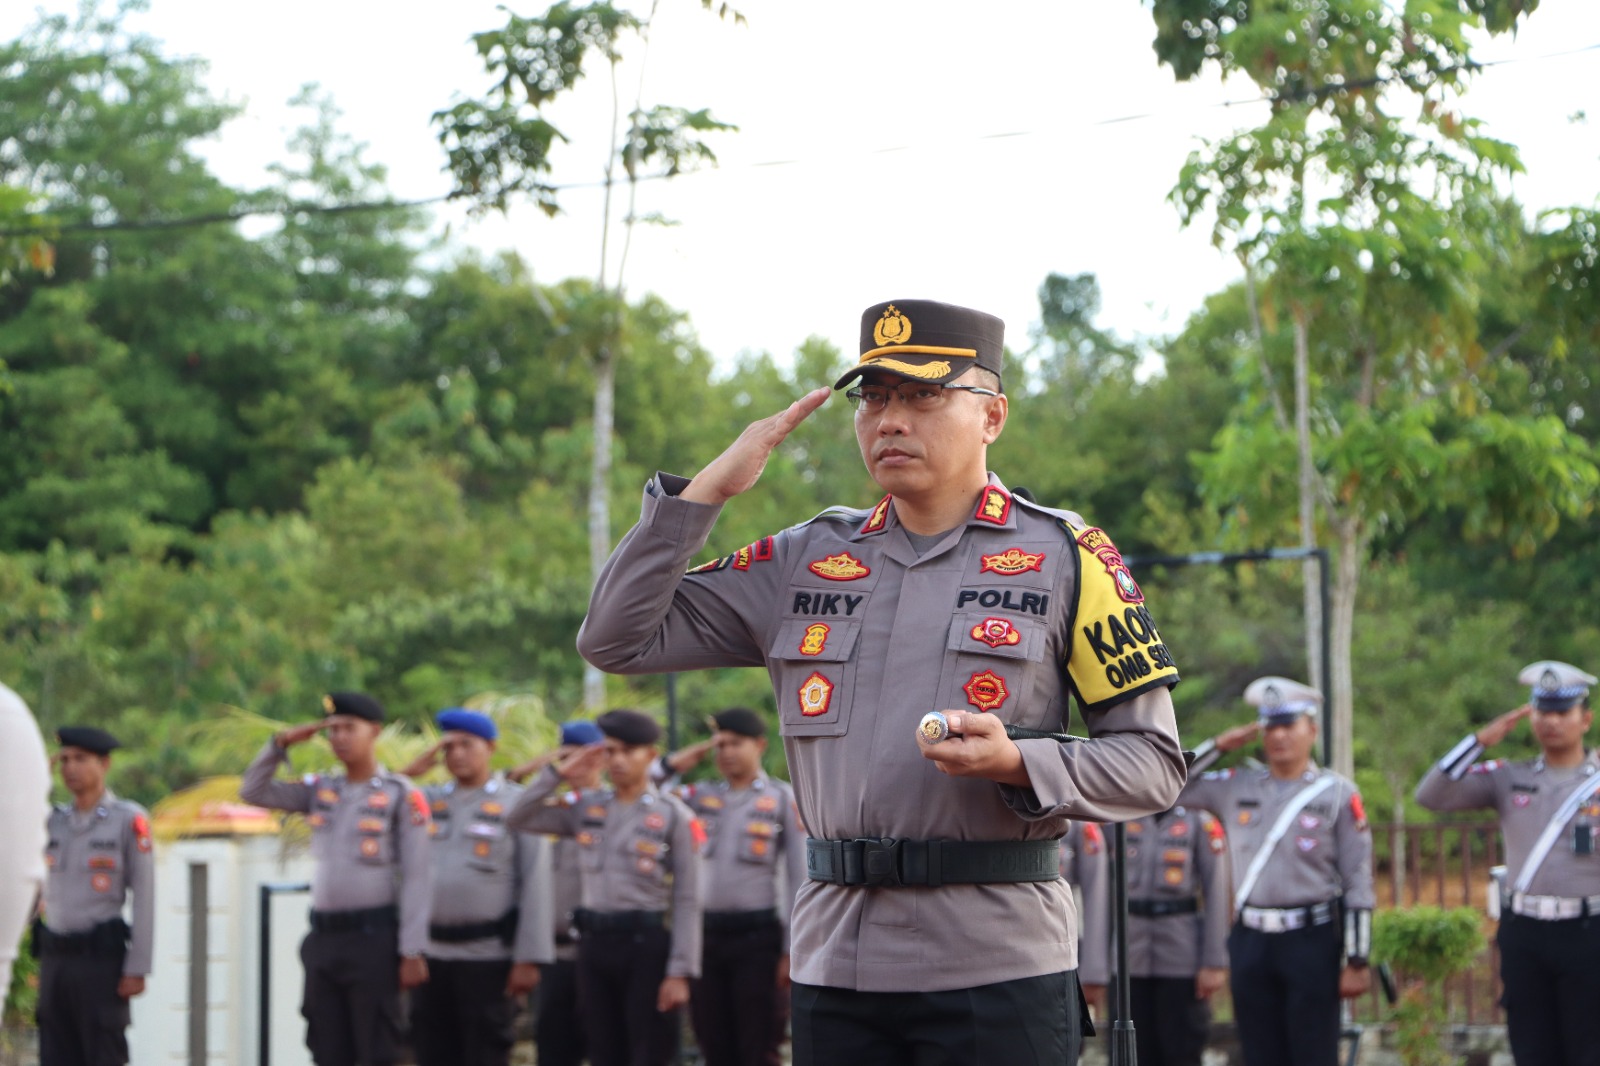 Kapolres Bintan AKBP Riky Iswoyo., S.I.K., M.M., saat menjadi Inspektur Upacara Peringatan Hari Kesadaran Nasional di Lapangan Bhayangkara Mapolres Bintan, Senin (19/02/24)/F.Dok.Hms.